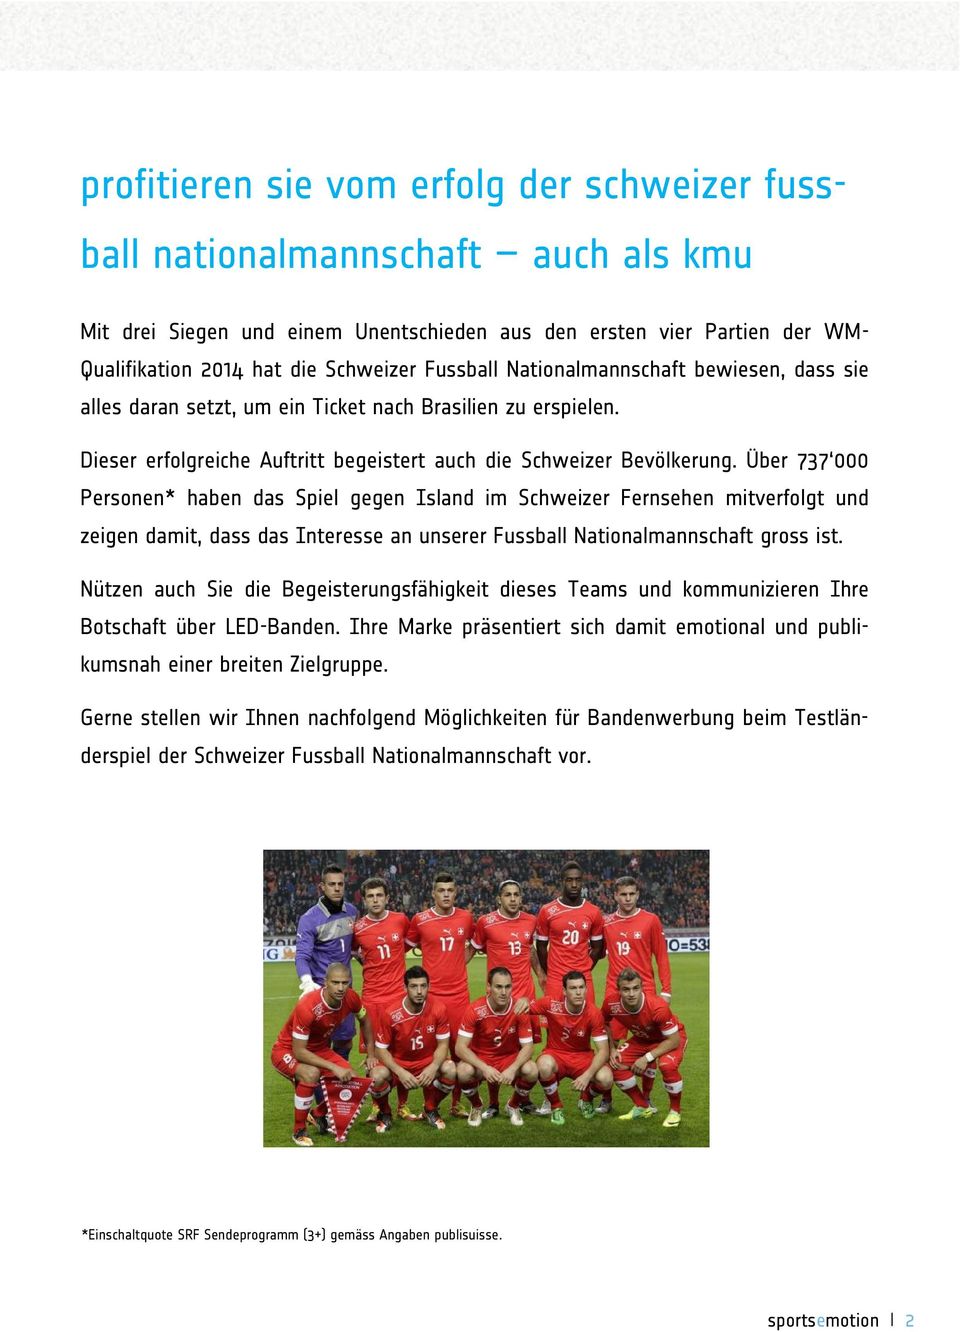 Über 737 000 Personen* haben das Spiel gegen Island im Schweizer Fernsehen mitverfolgt und zeigen damit, dass das Interesse an unserer Fussball Nationalmannschaft gross ist.